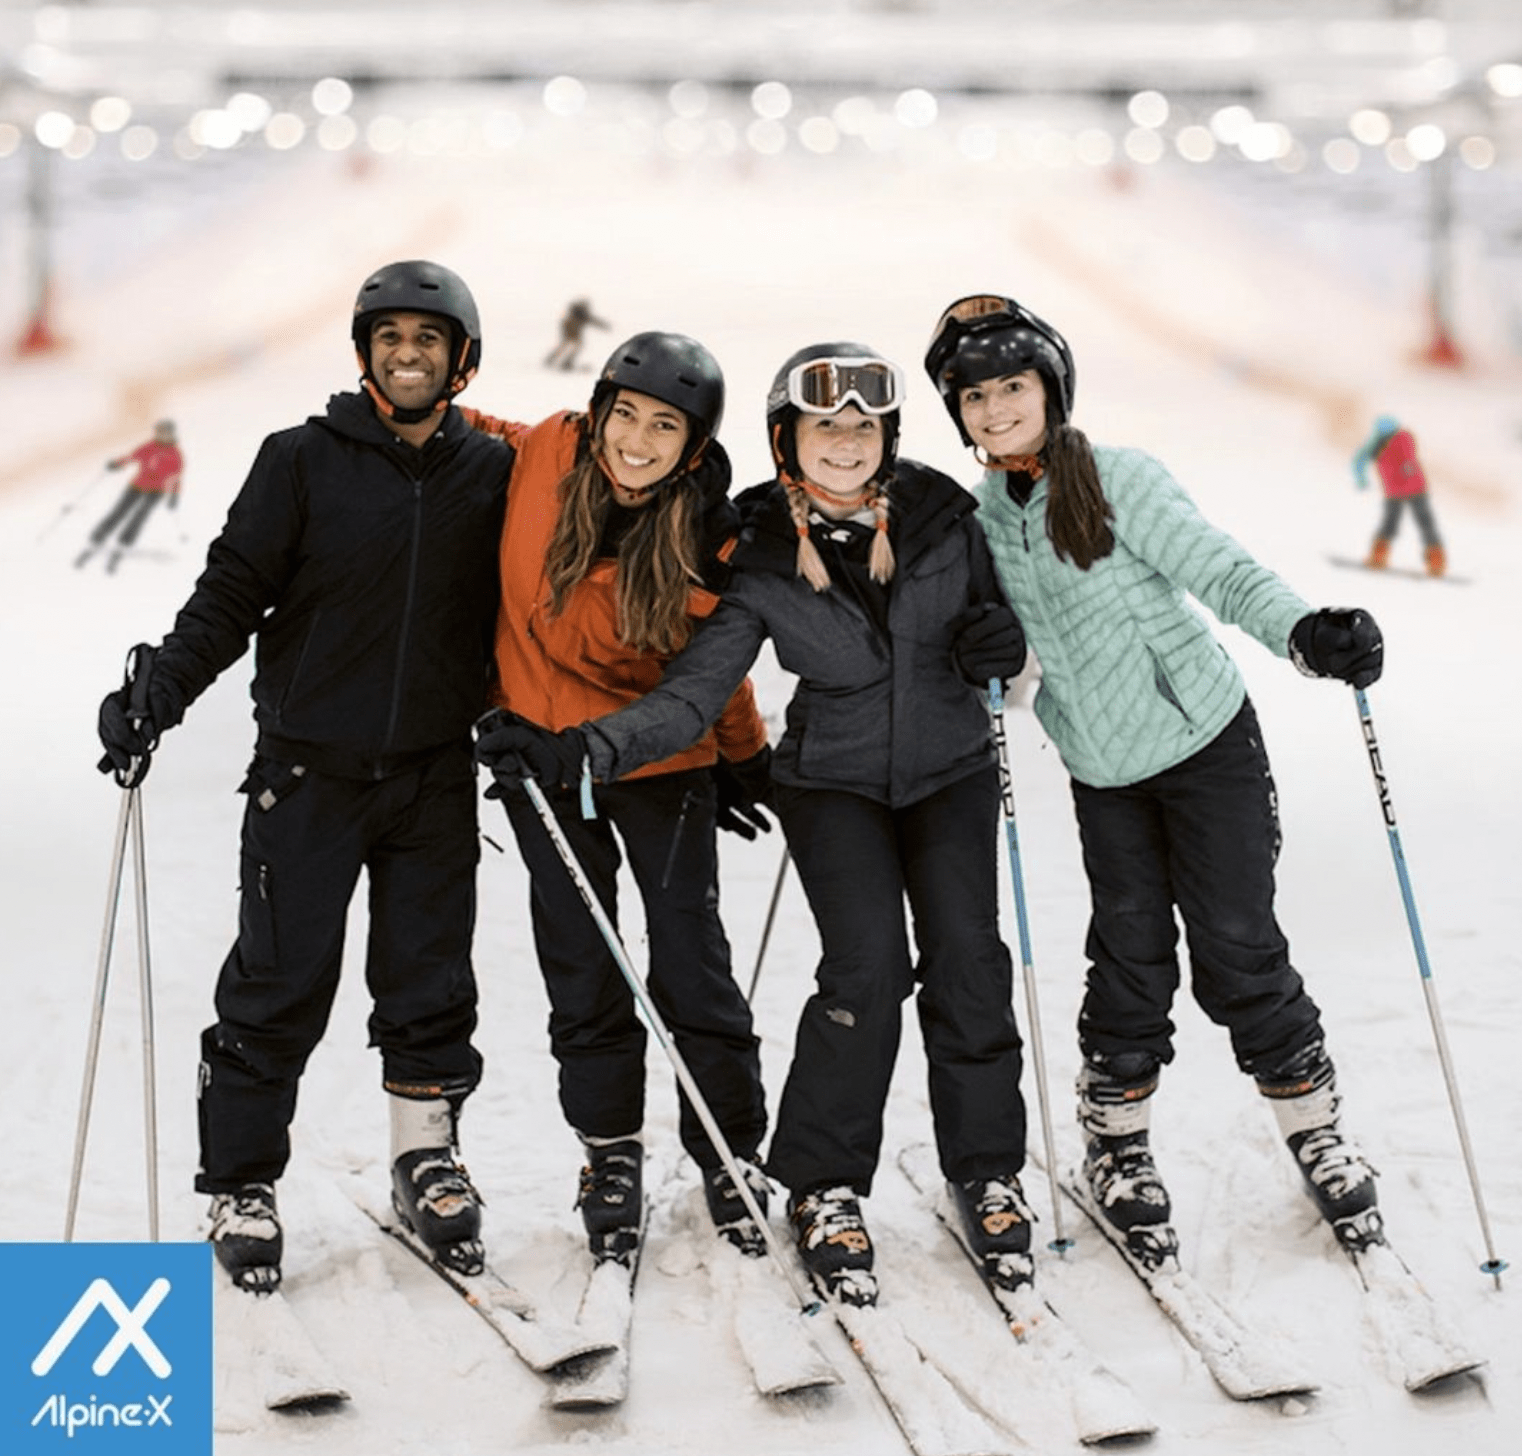 Alpine-X Skiers